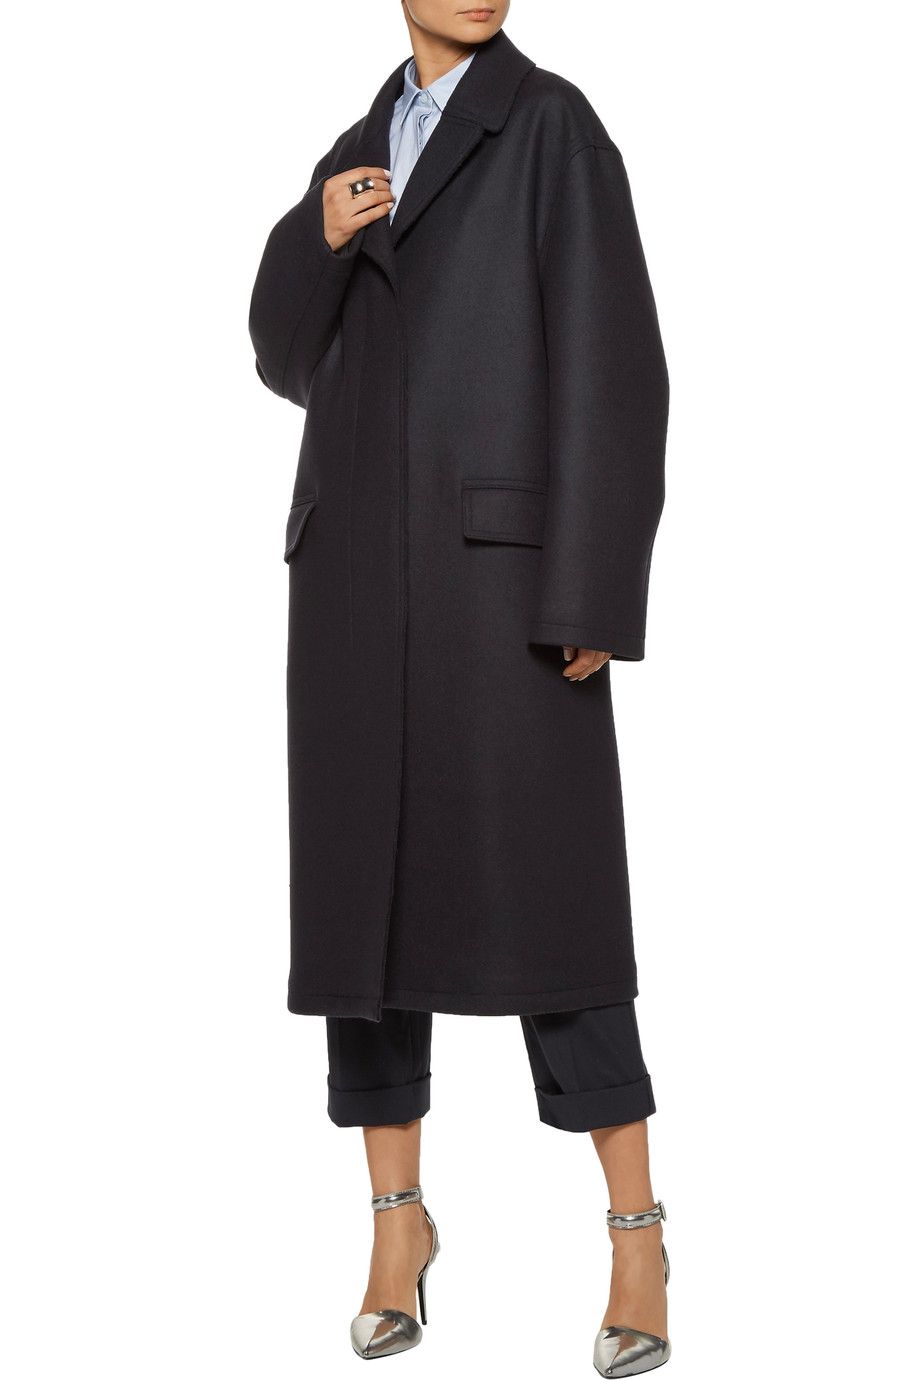 A model in a navy wool coat